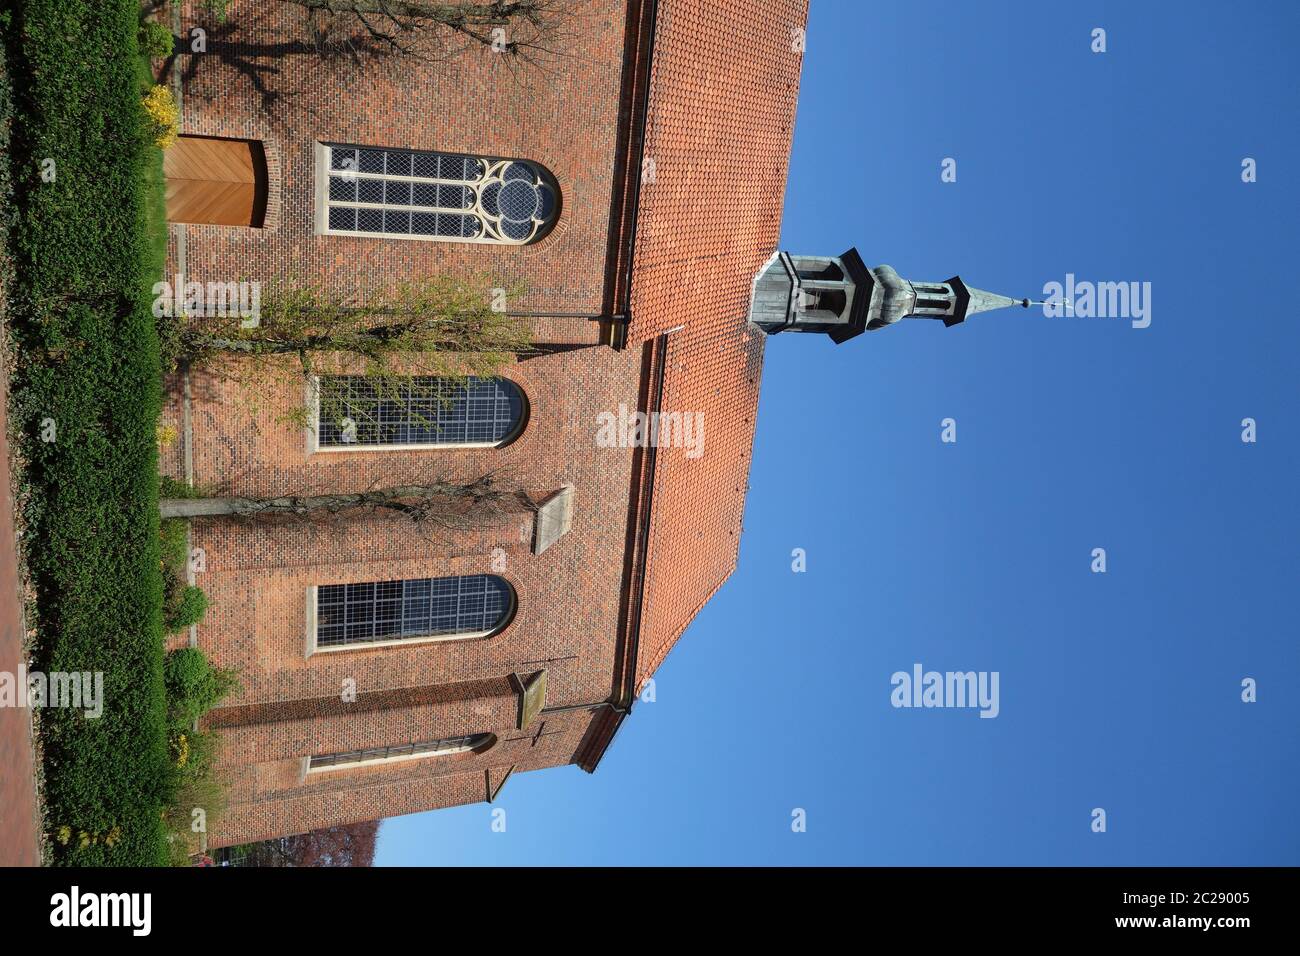 Monastery Church of St. Joseph on Franziskanerplatz in Vechta Stock Photo